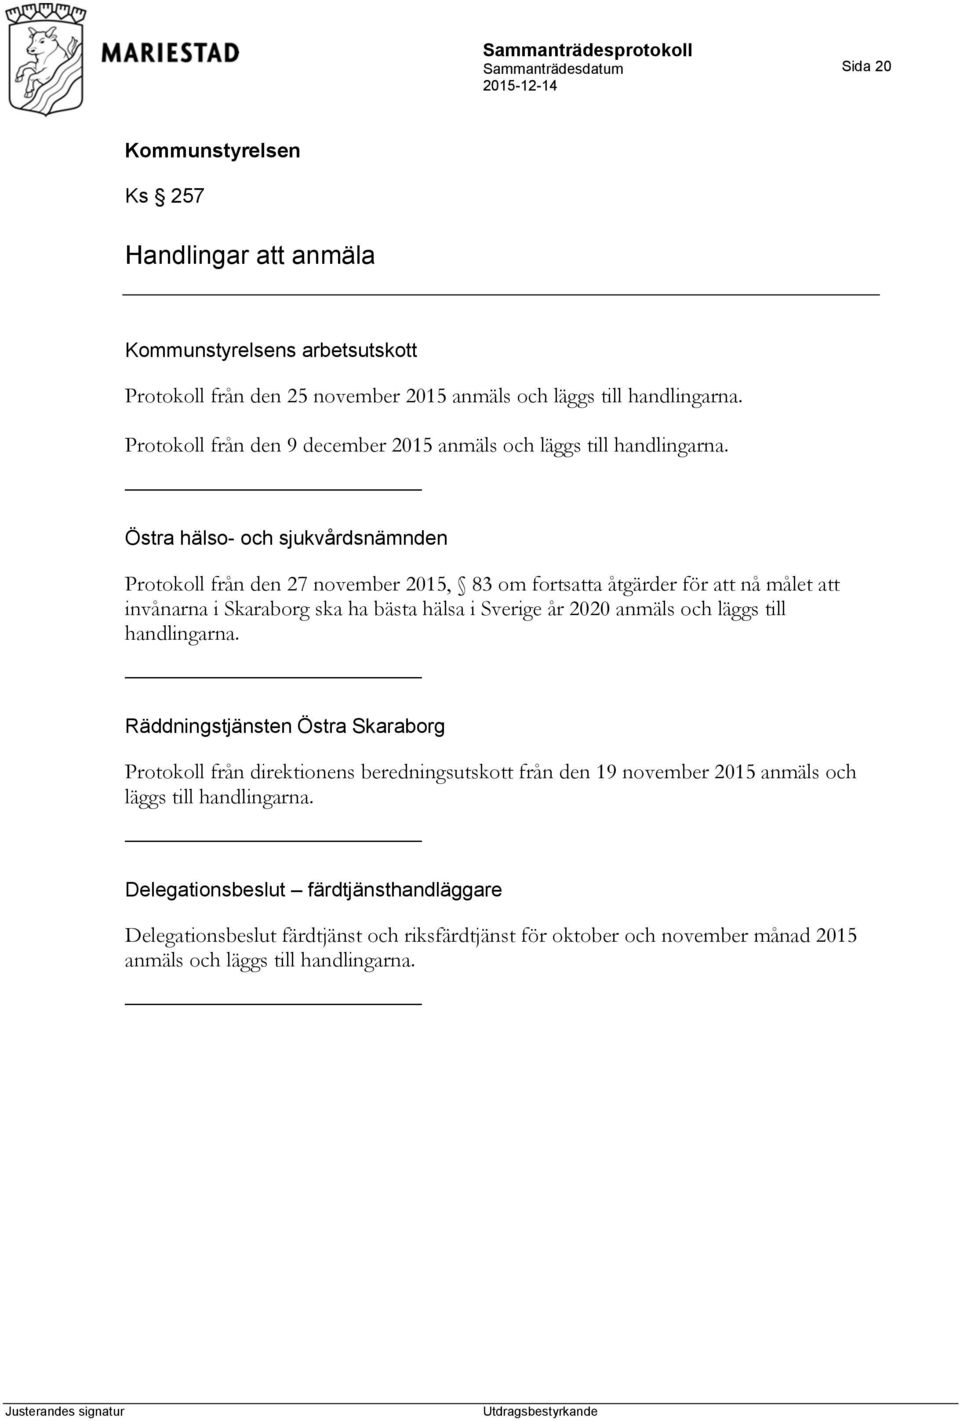 Östra hälso- och sjukvårdsnämnden Protokoll från den 27 november 2015, 83 om fortsatta åtgärder för att nå målet att invånarna i Skaraborg ska ha bästa hälsa i Sverige år 2020